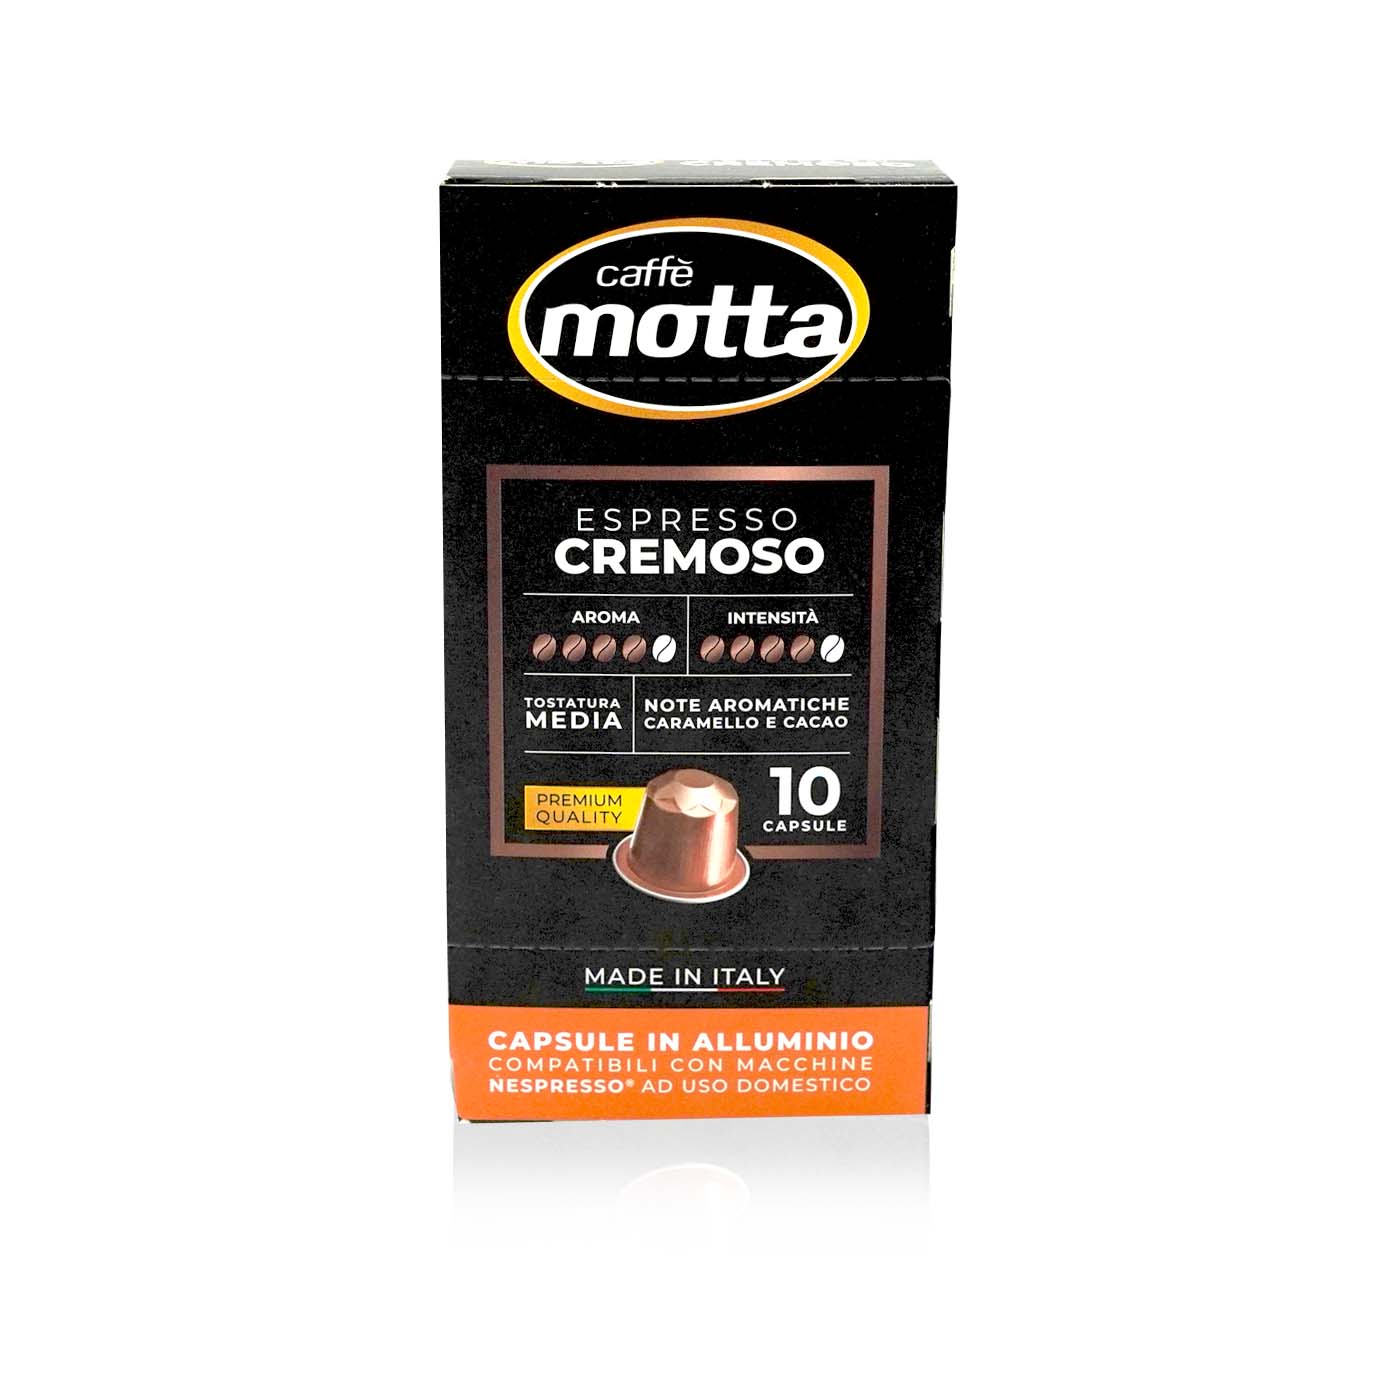 MOTTA Caffè Espresso cremoso capsule-Espresso Kapseln - 0,055kg